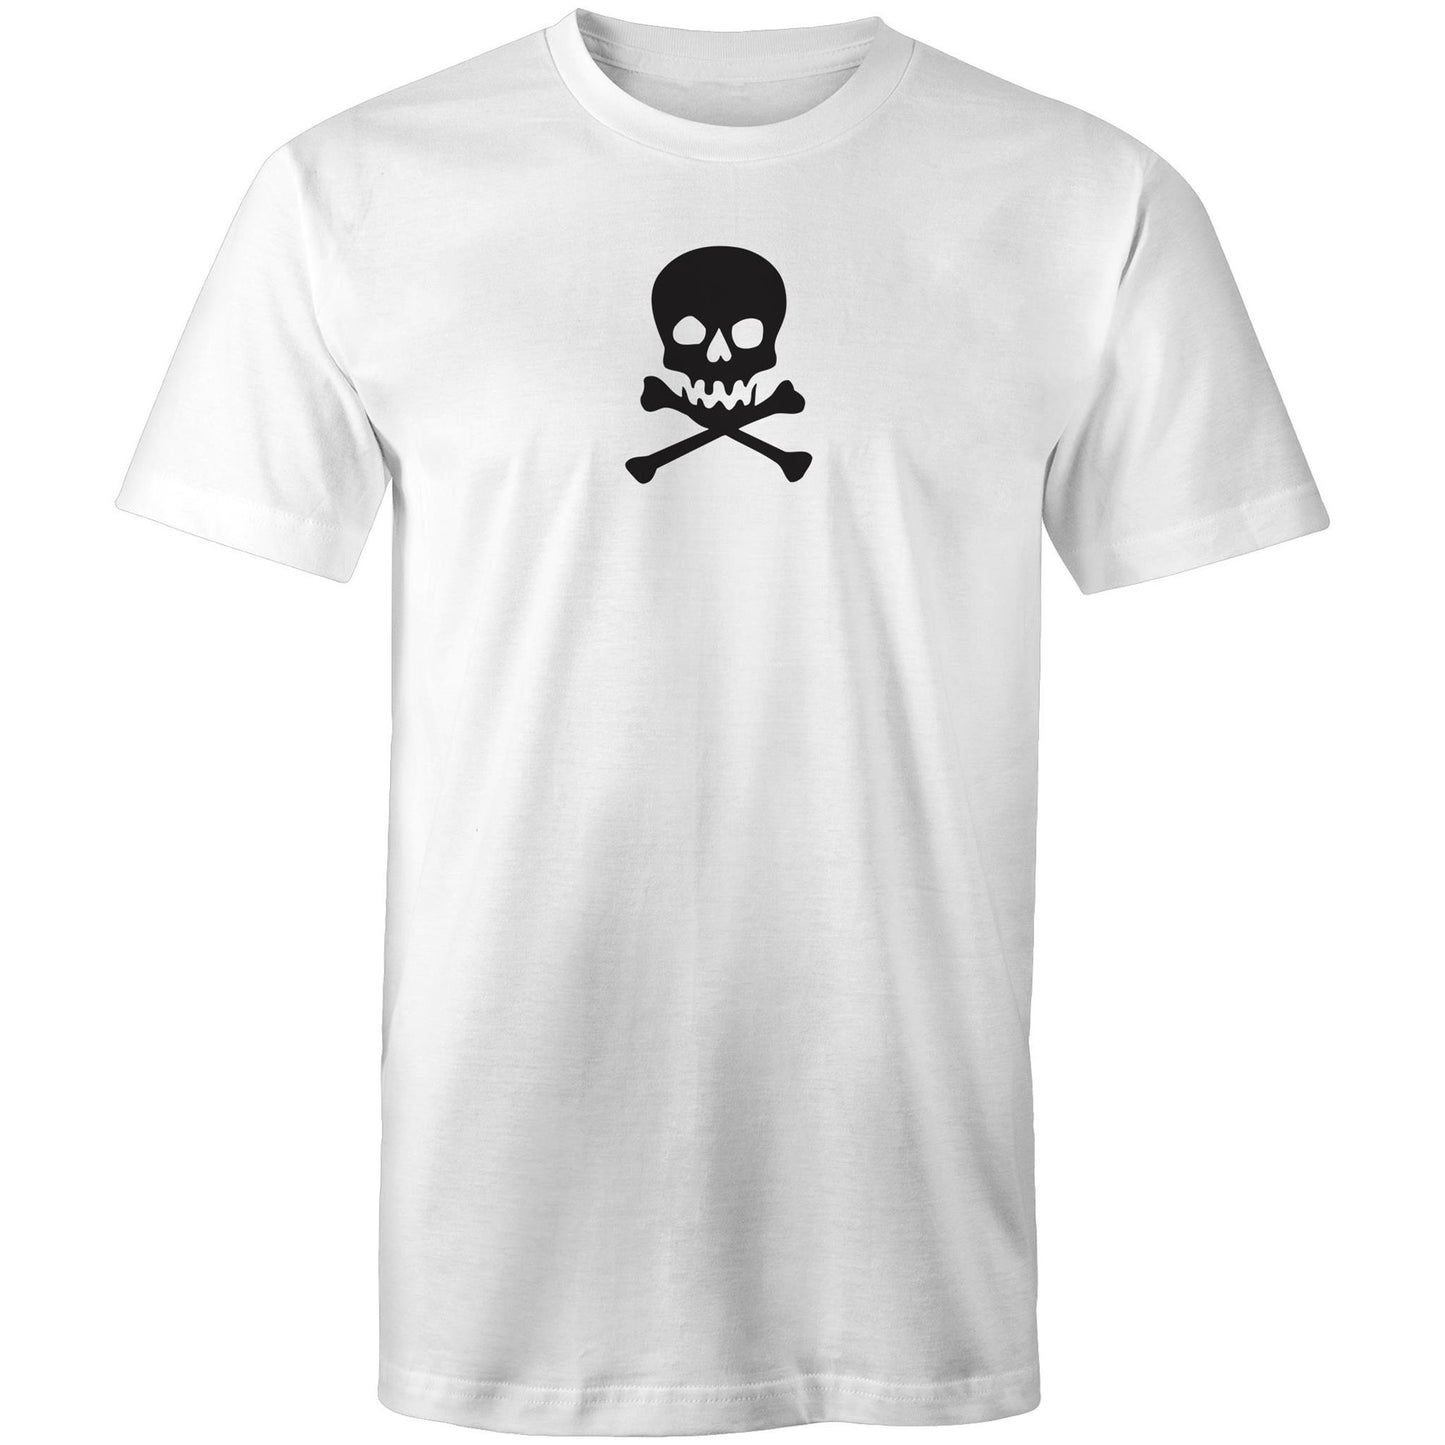 Skull and Cross Bones T Shirts for Men (Unisex)